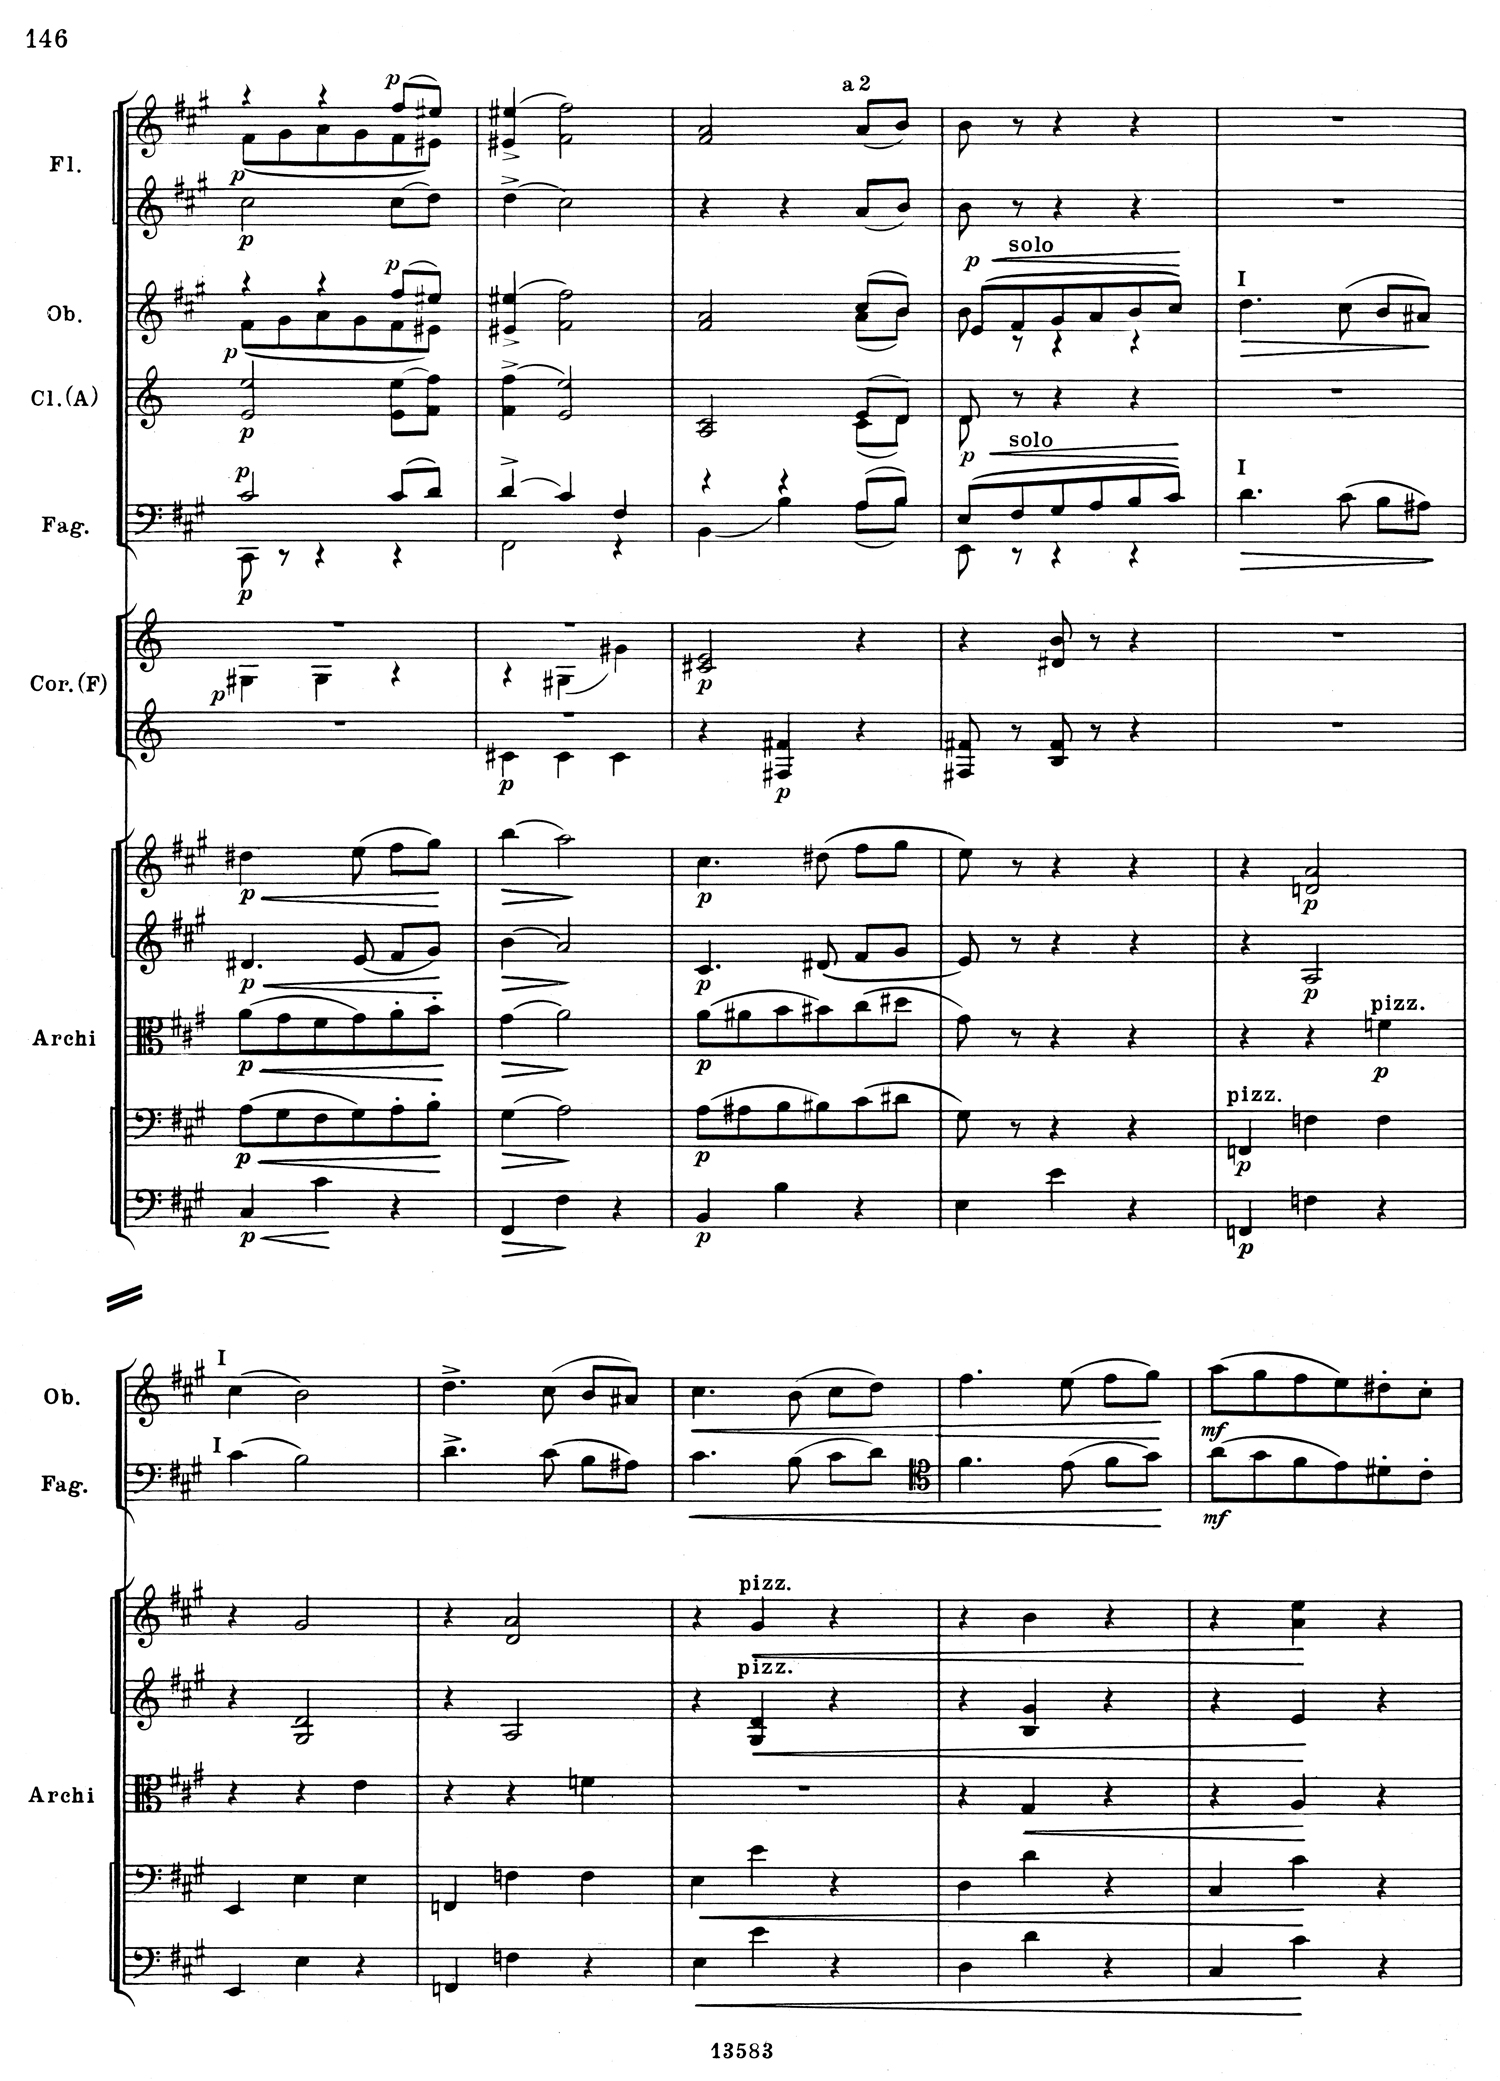 Tchaikovsky 5 Mvt 3 Score 1.jpg